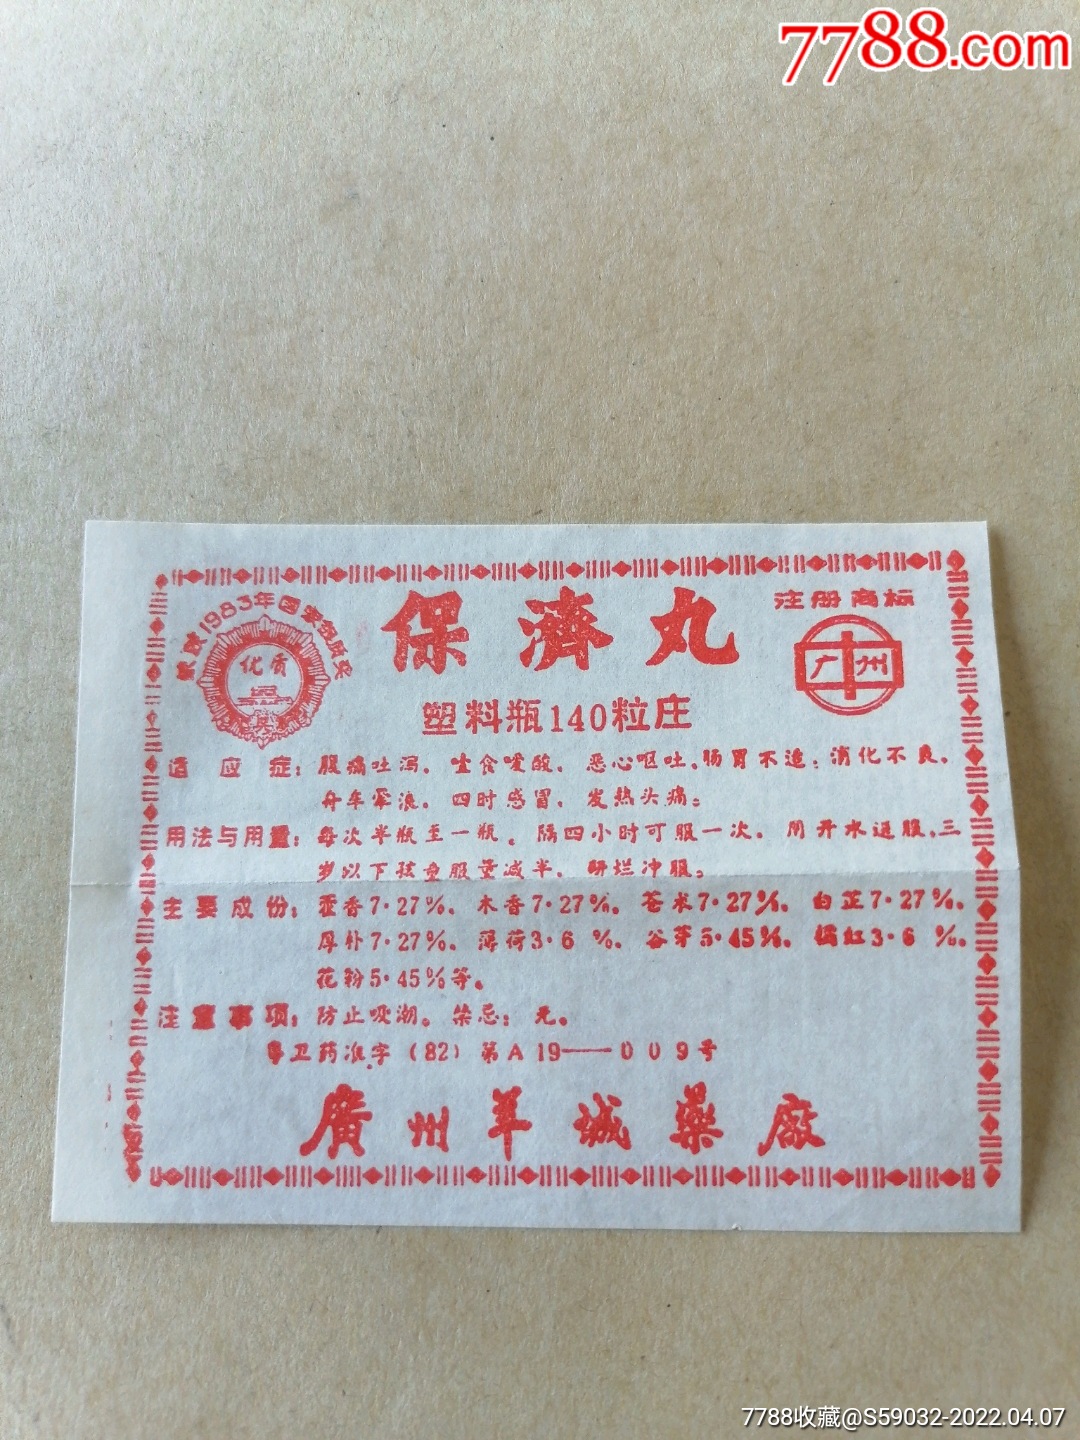 香港保济丸说明书图片